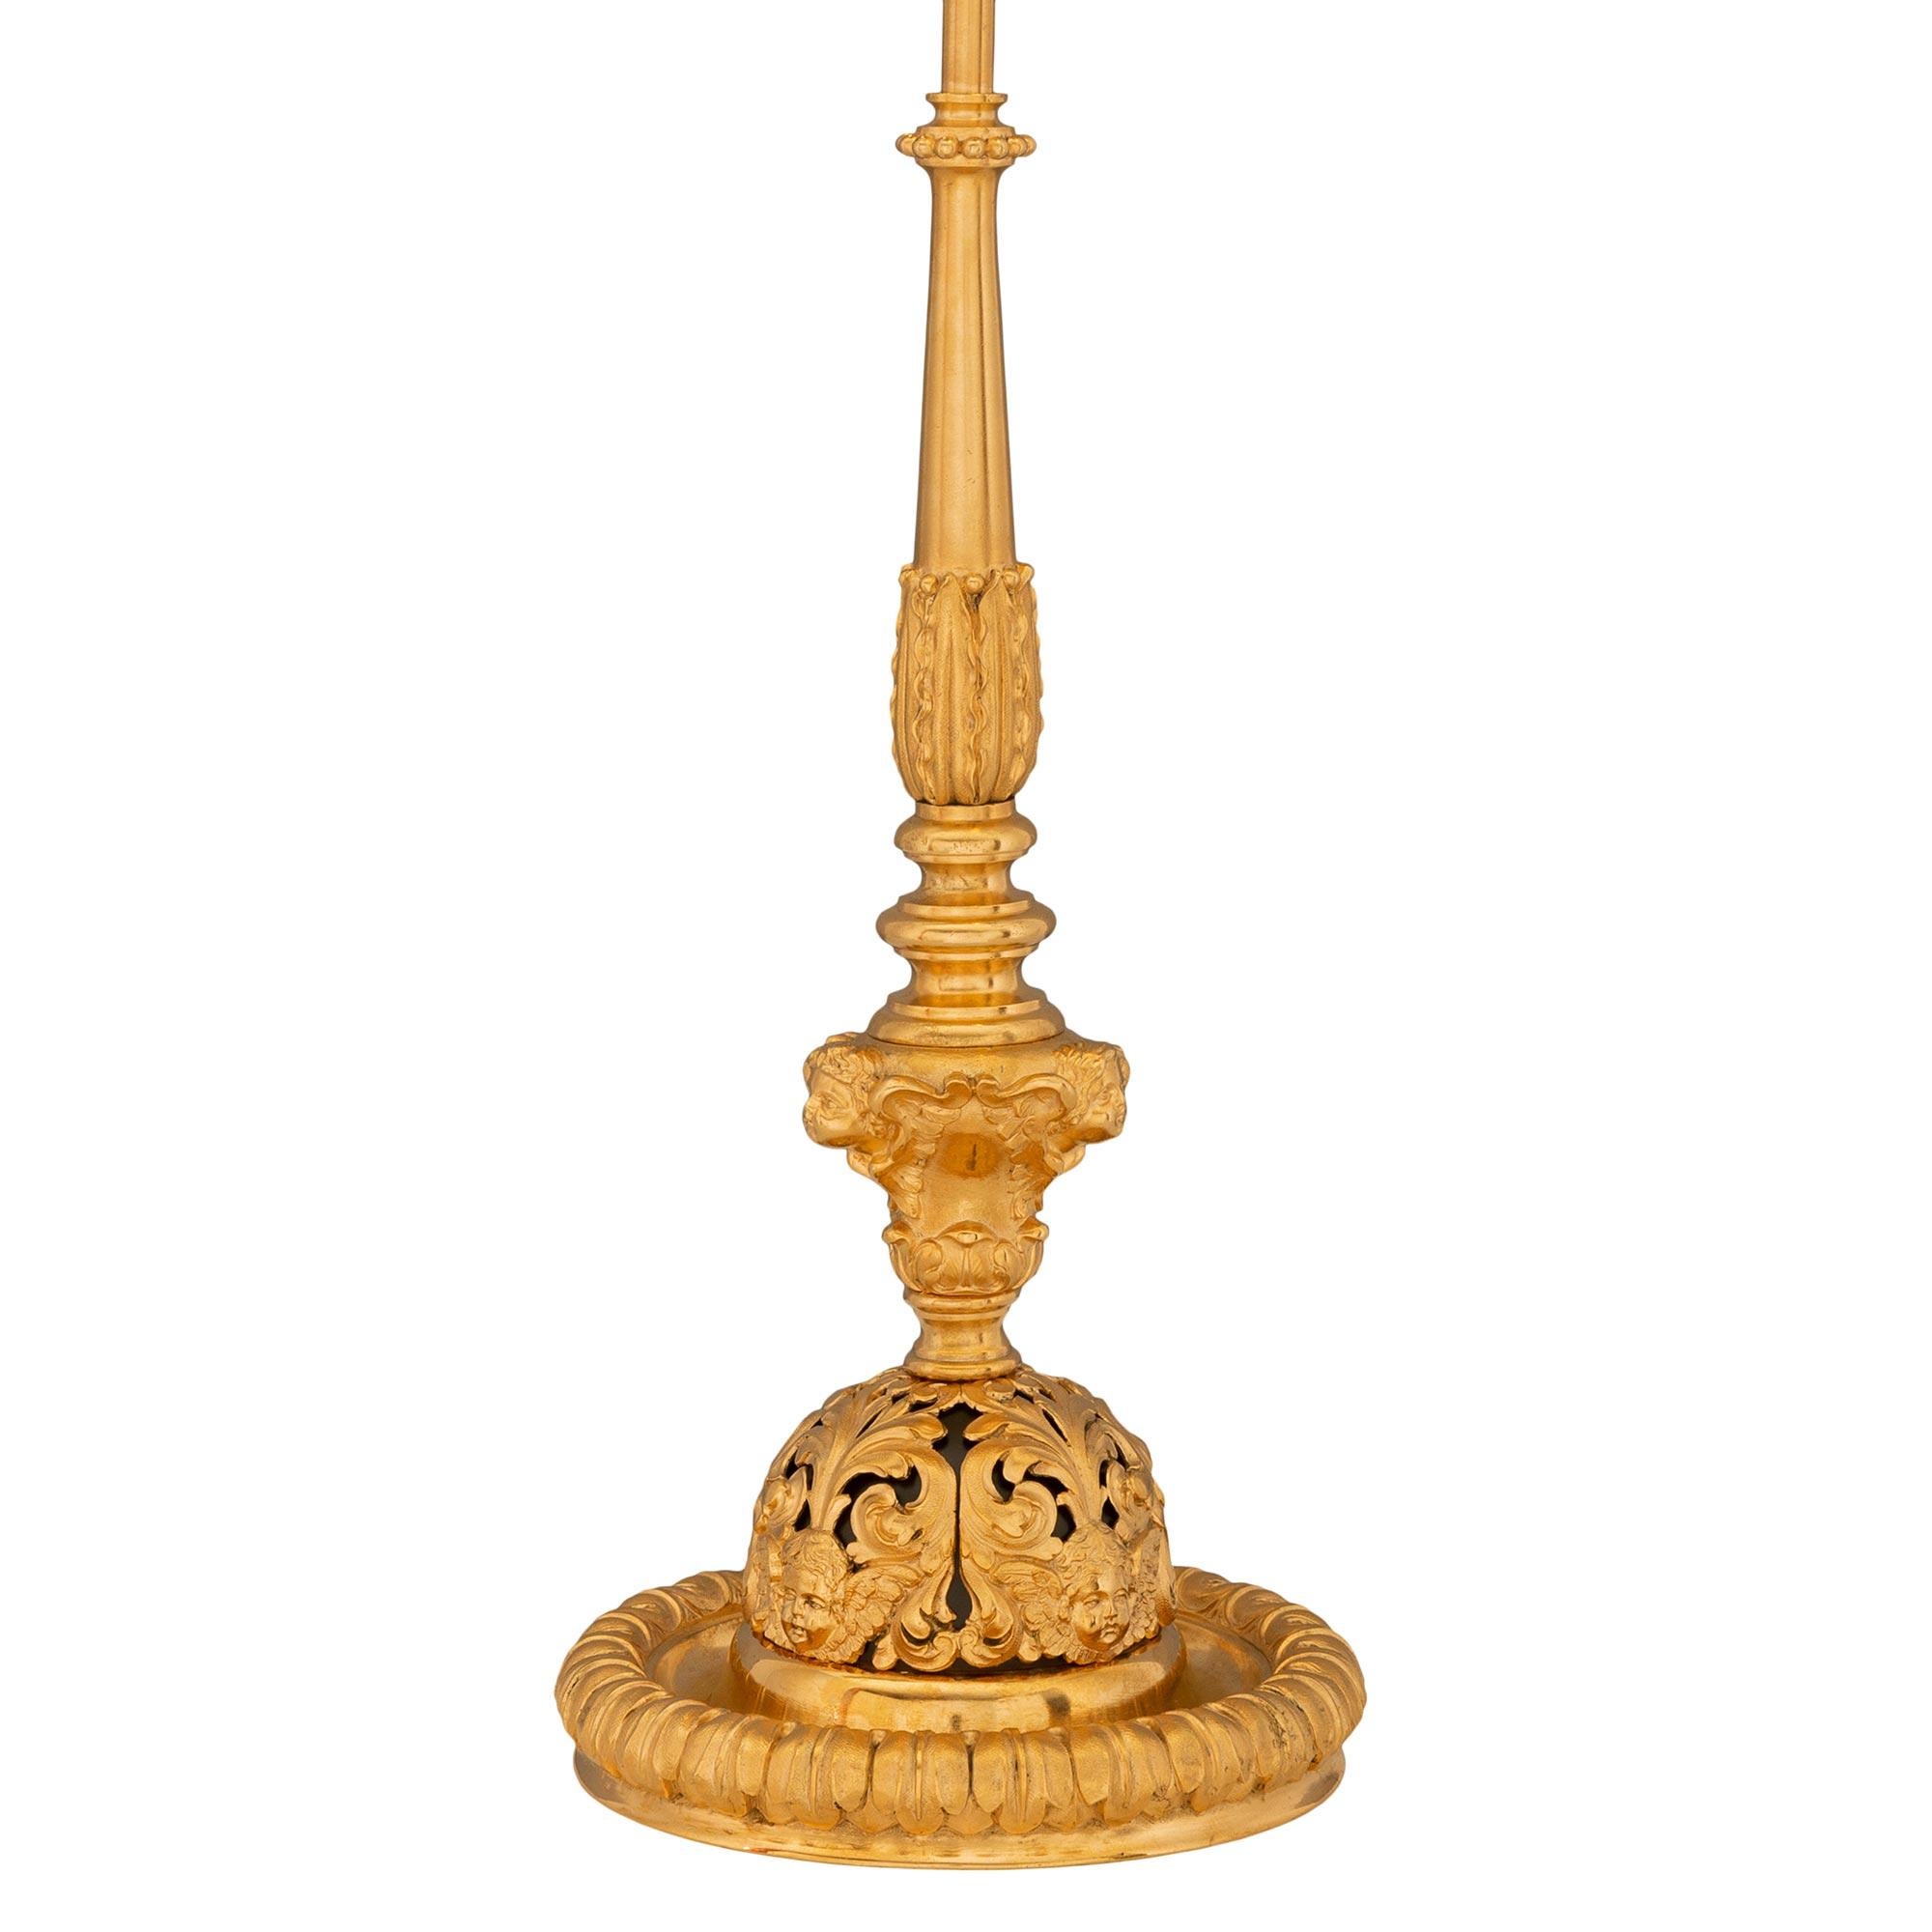 Une belle lampe française du 19ème siècle en st. ormolu de la Renaissance. La lampe est surélevée par une belle base circulaire avec une fine bande feuillagée sous le support percé en forme de dôme présentant des mouvements feuillagés et de